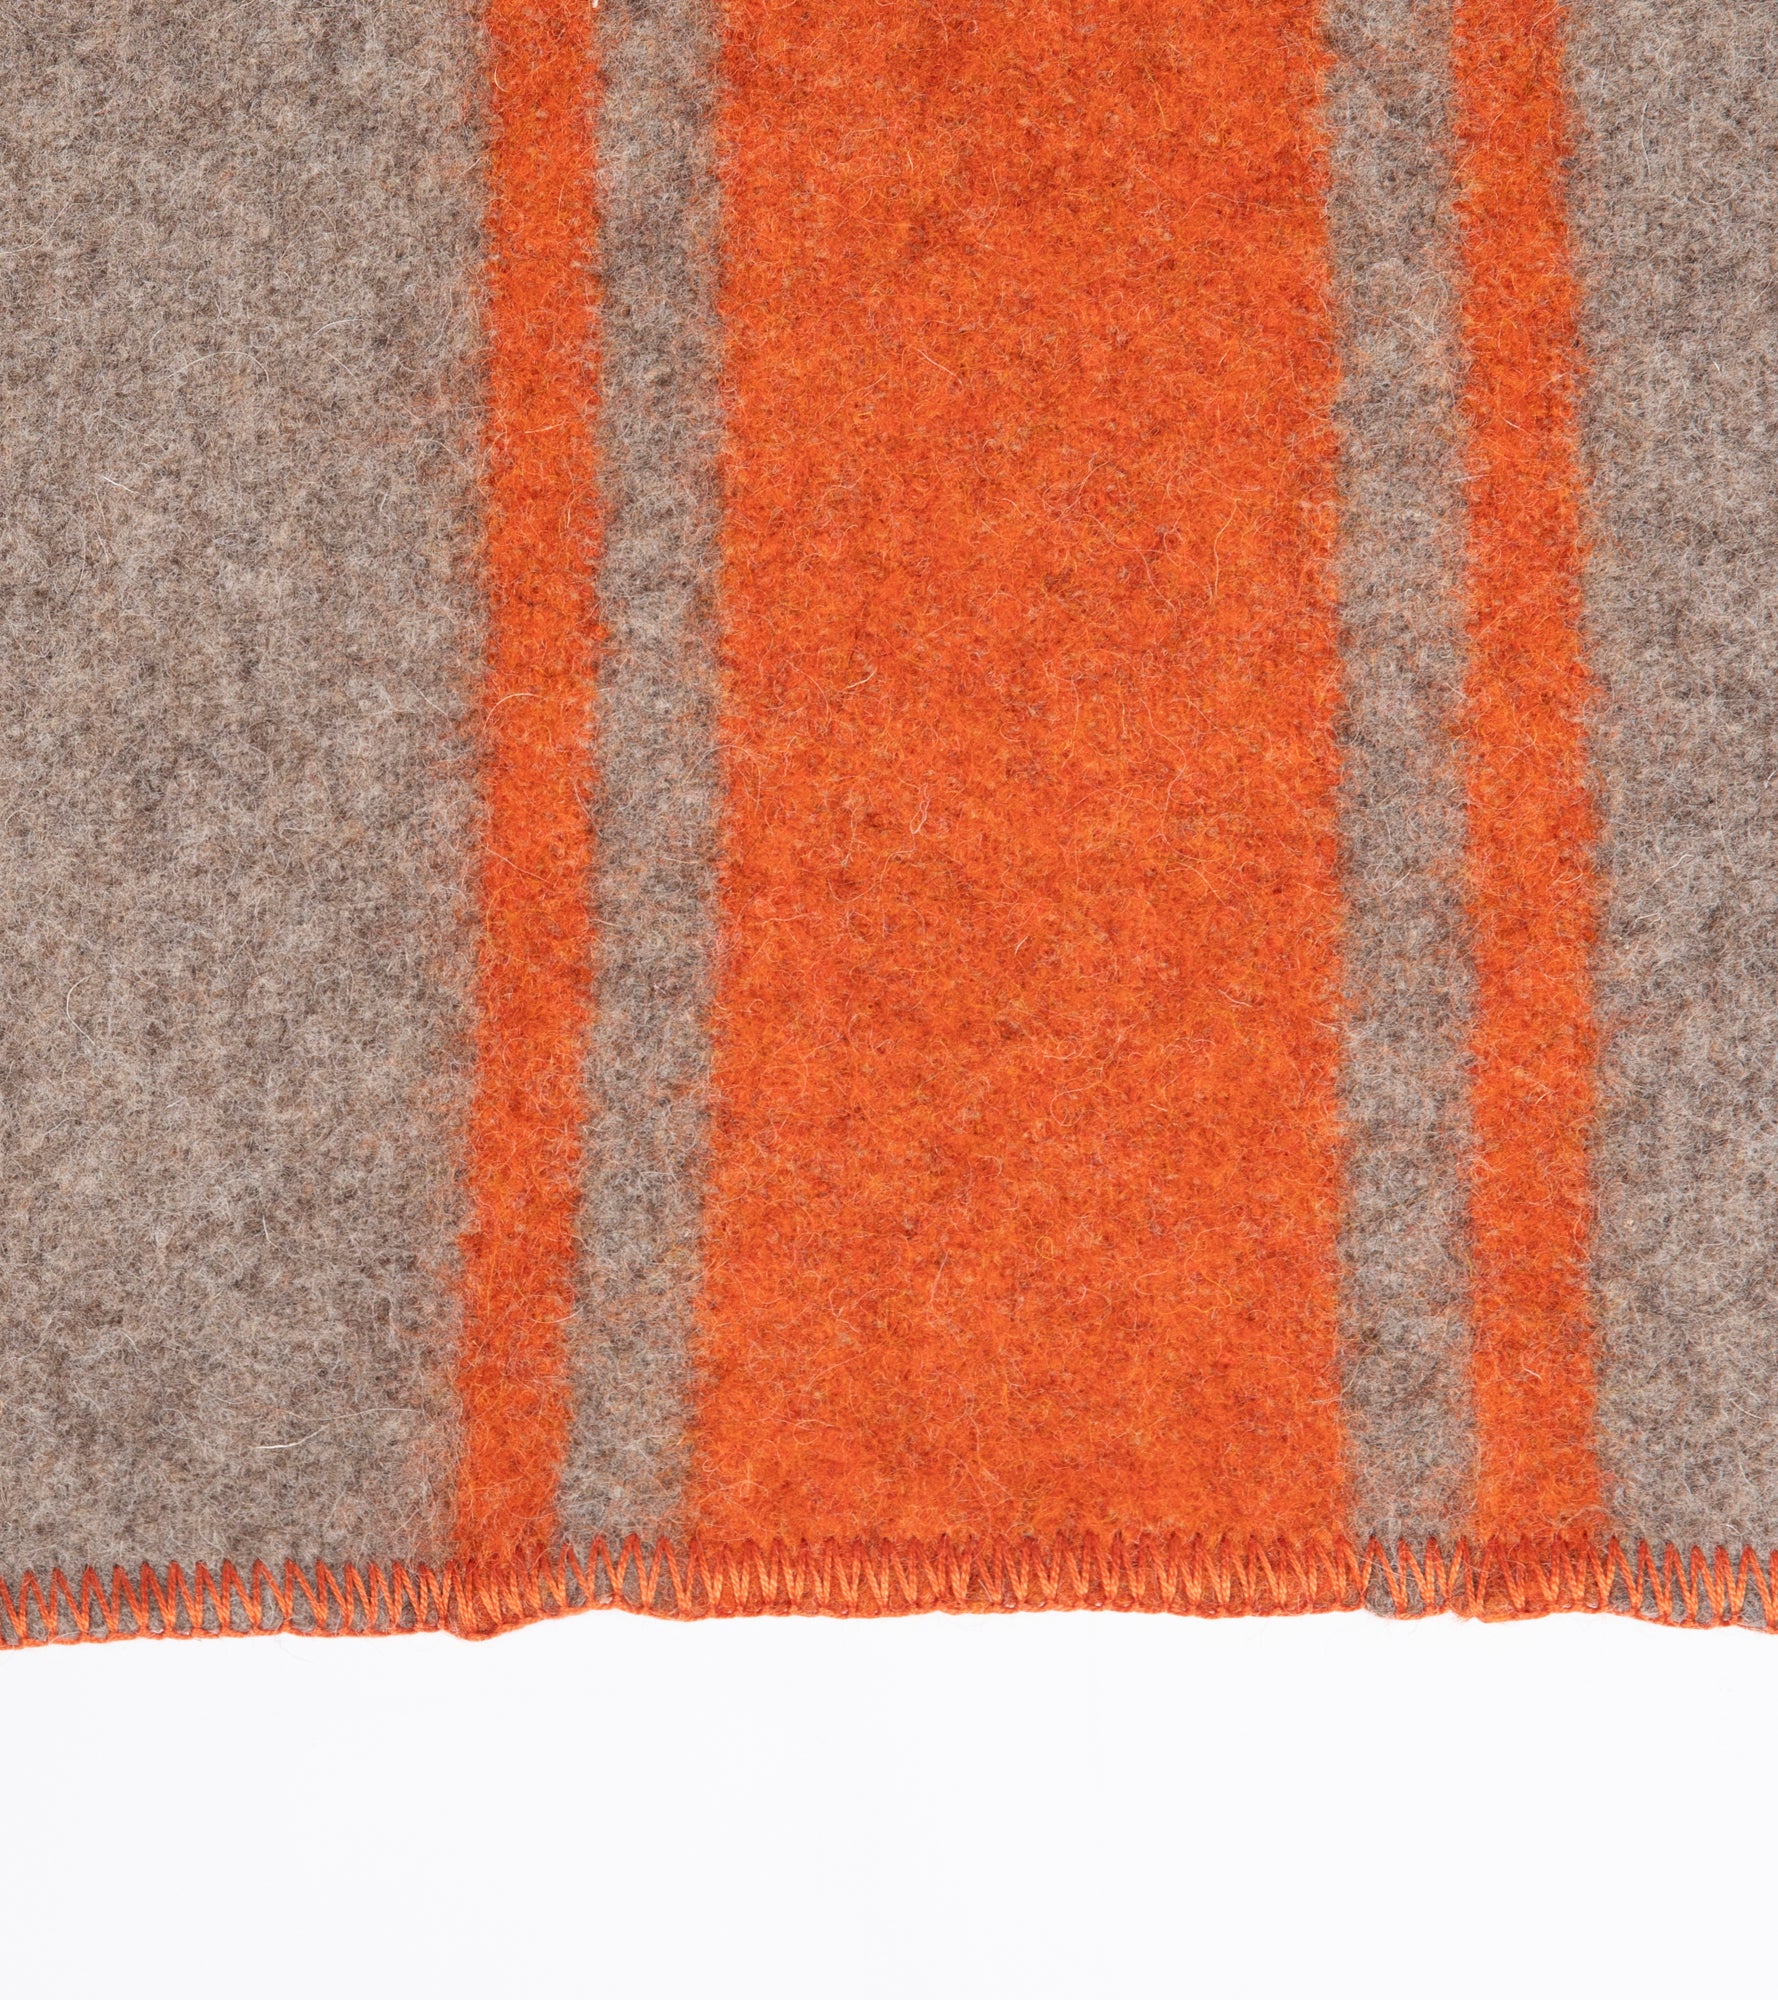 orange-recycled-wool-dog-blanket_46afabbb-5b27-4913-9b3a-1a1397d11e1a.jpg